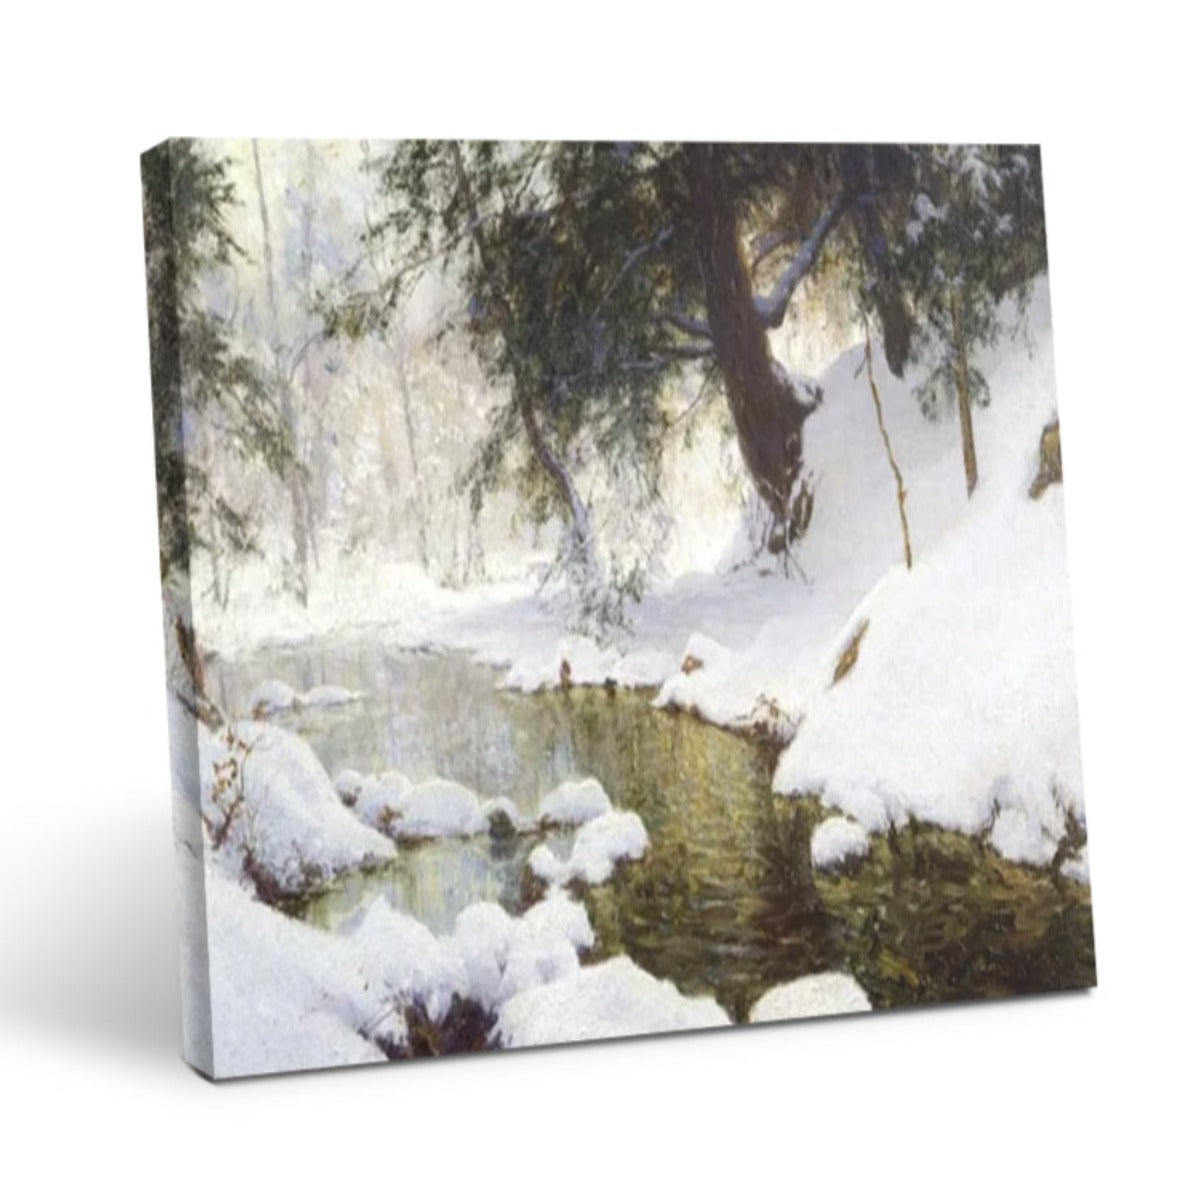 November Snow - Stampe d'Arte Vintage per Decorare il Soggiorno in Stile Invernale